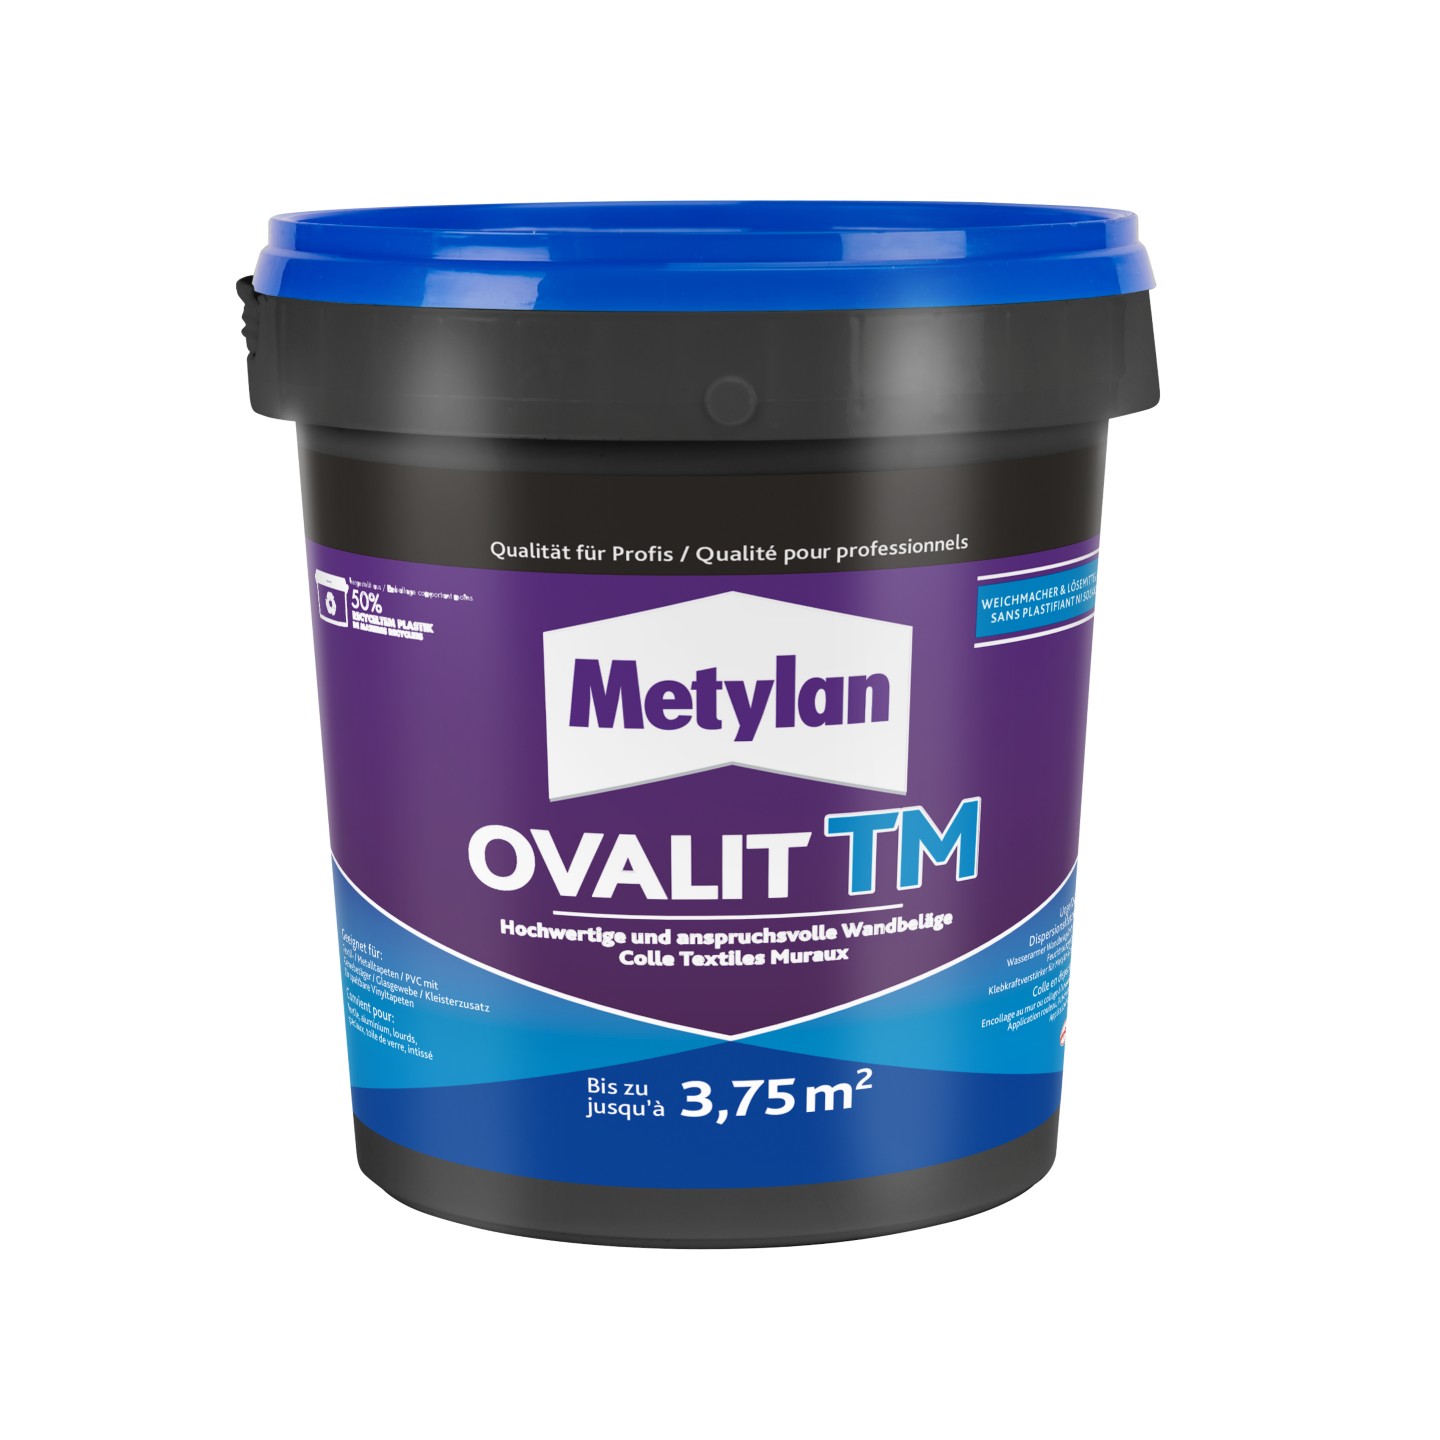 Ovalit TM Metylan